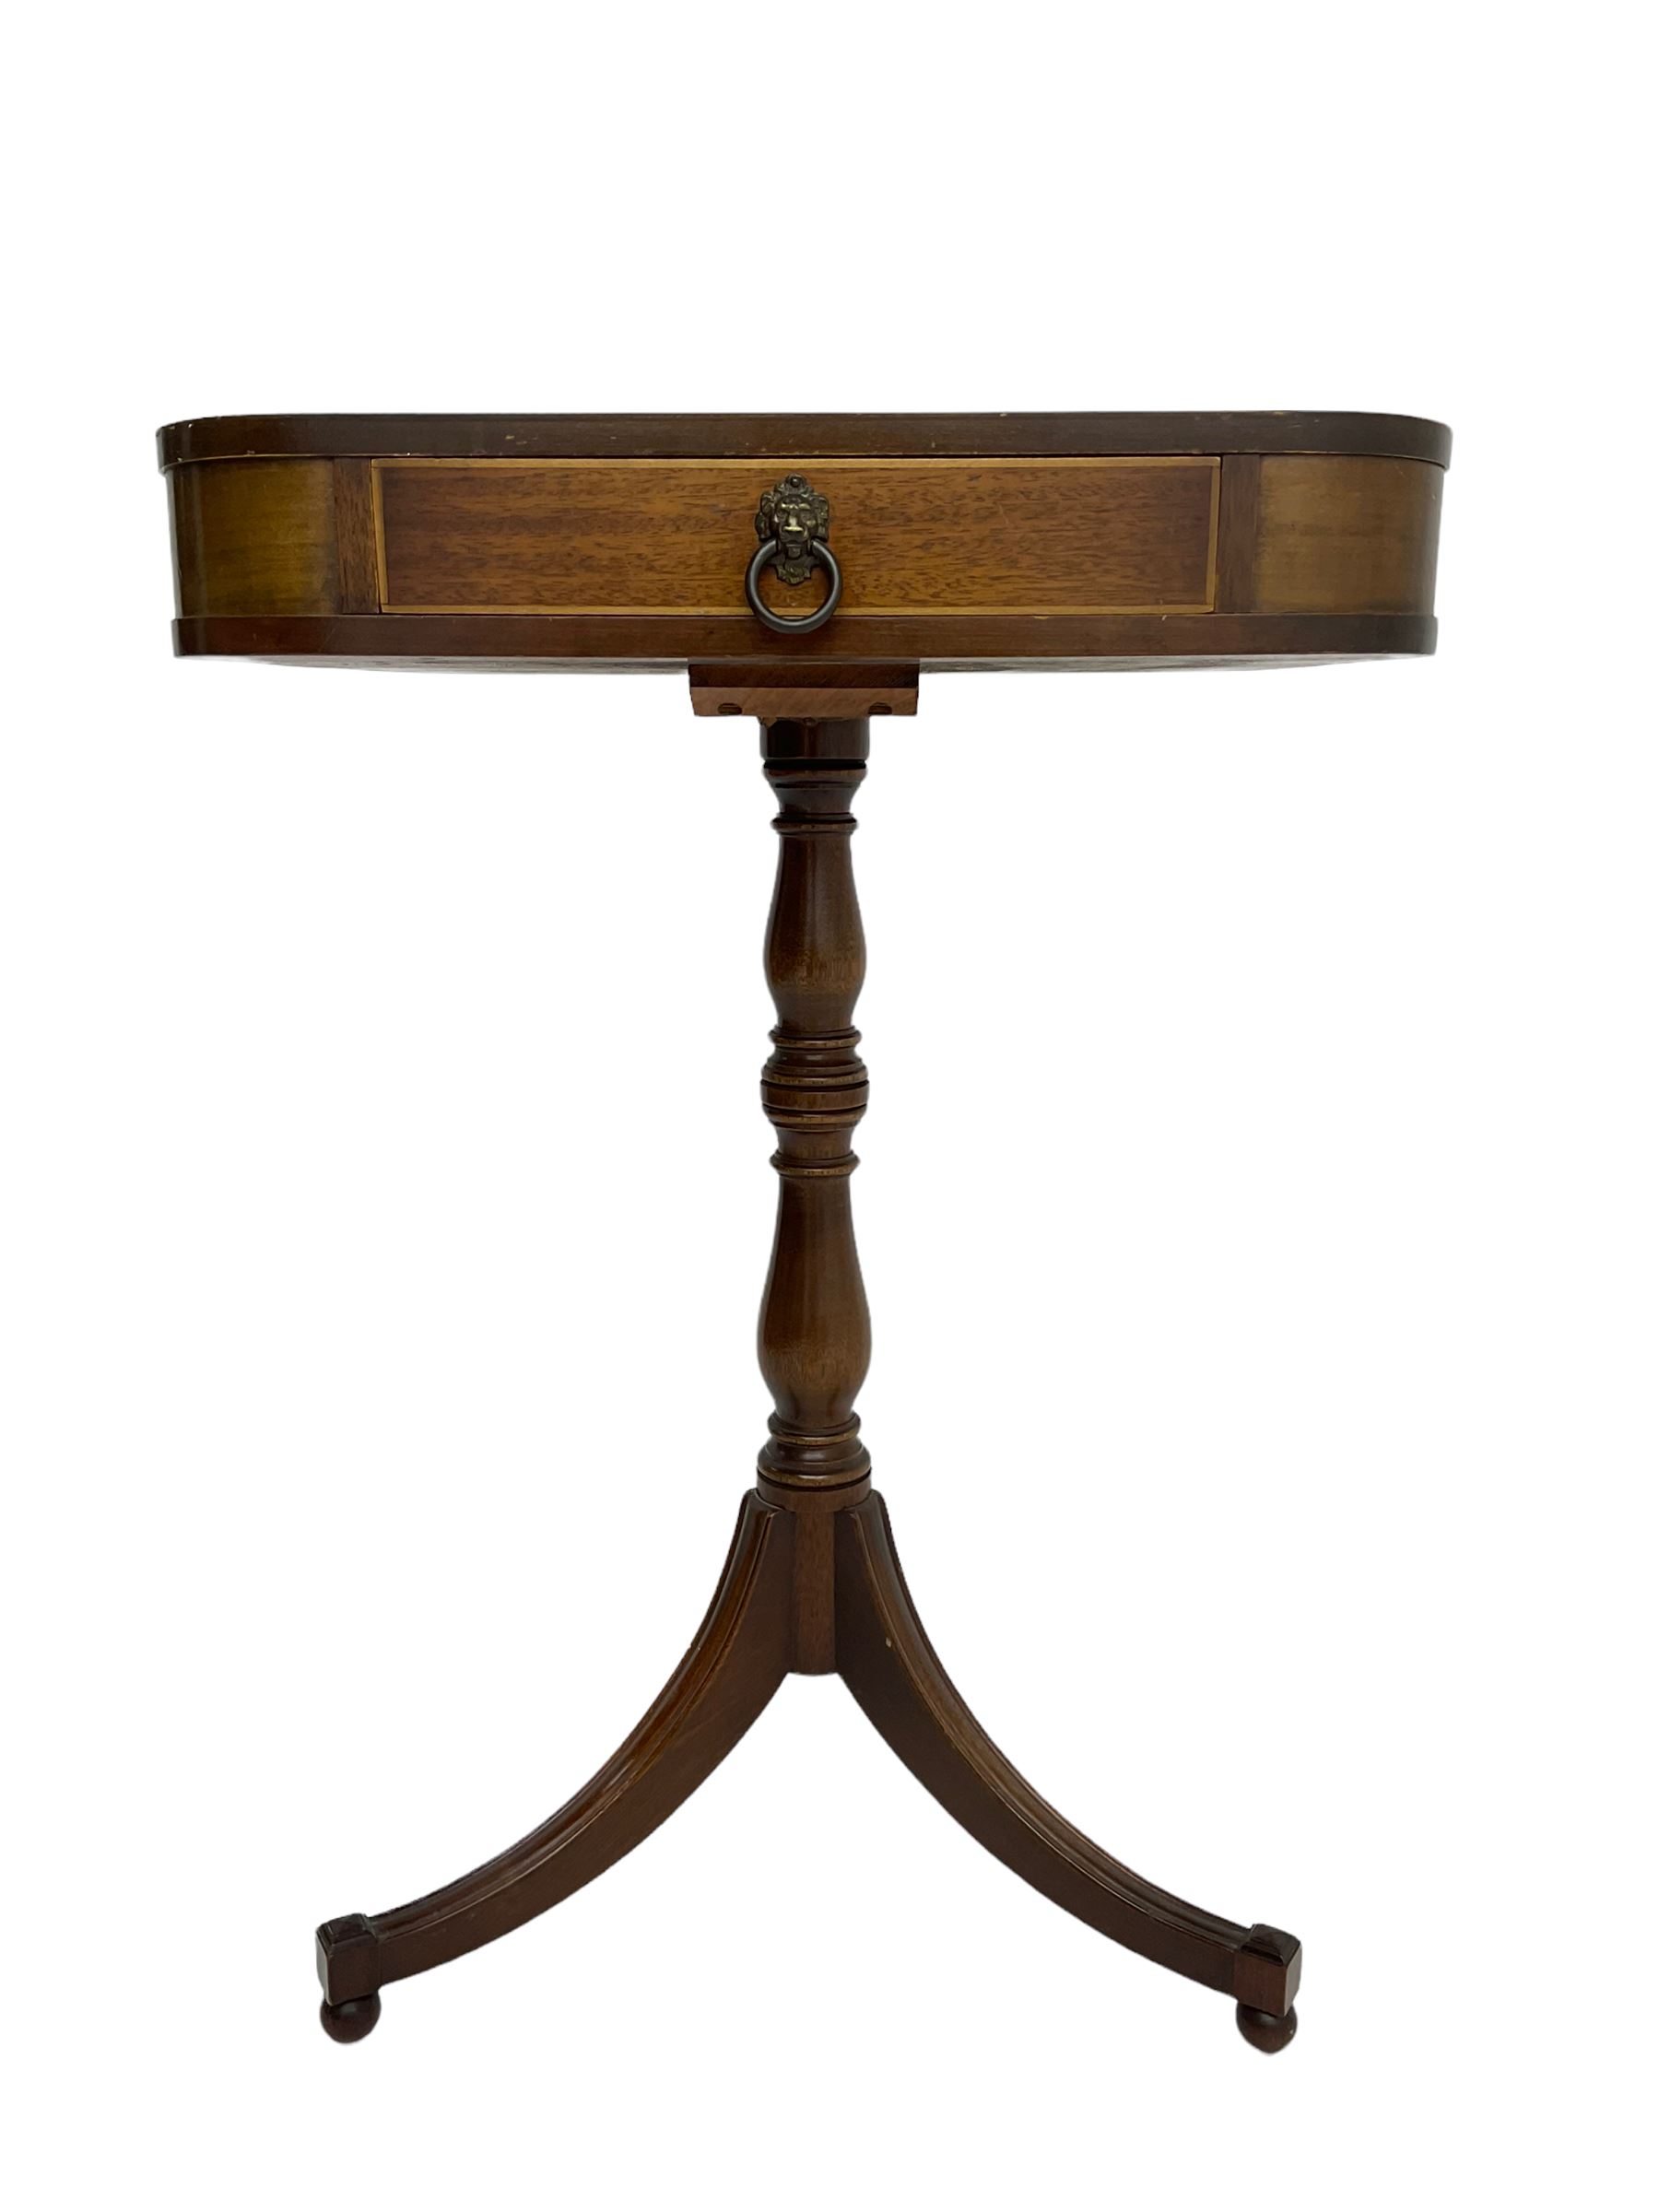 Regency style mahogany pedestal table